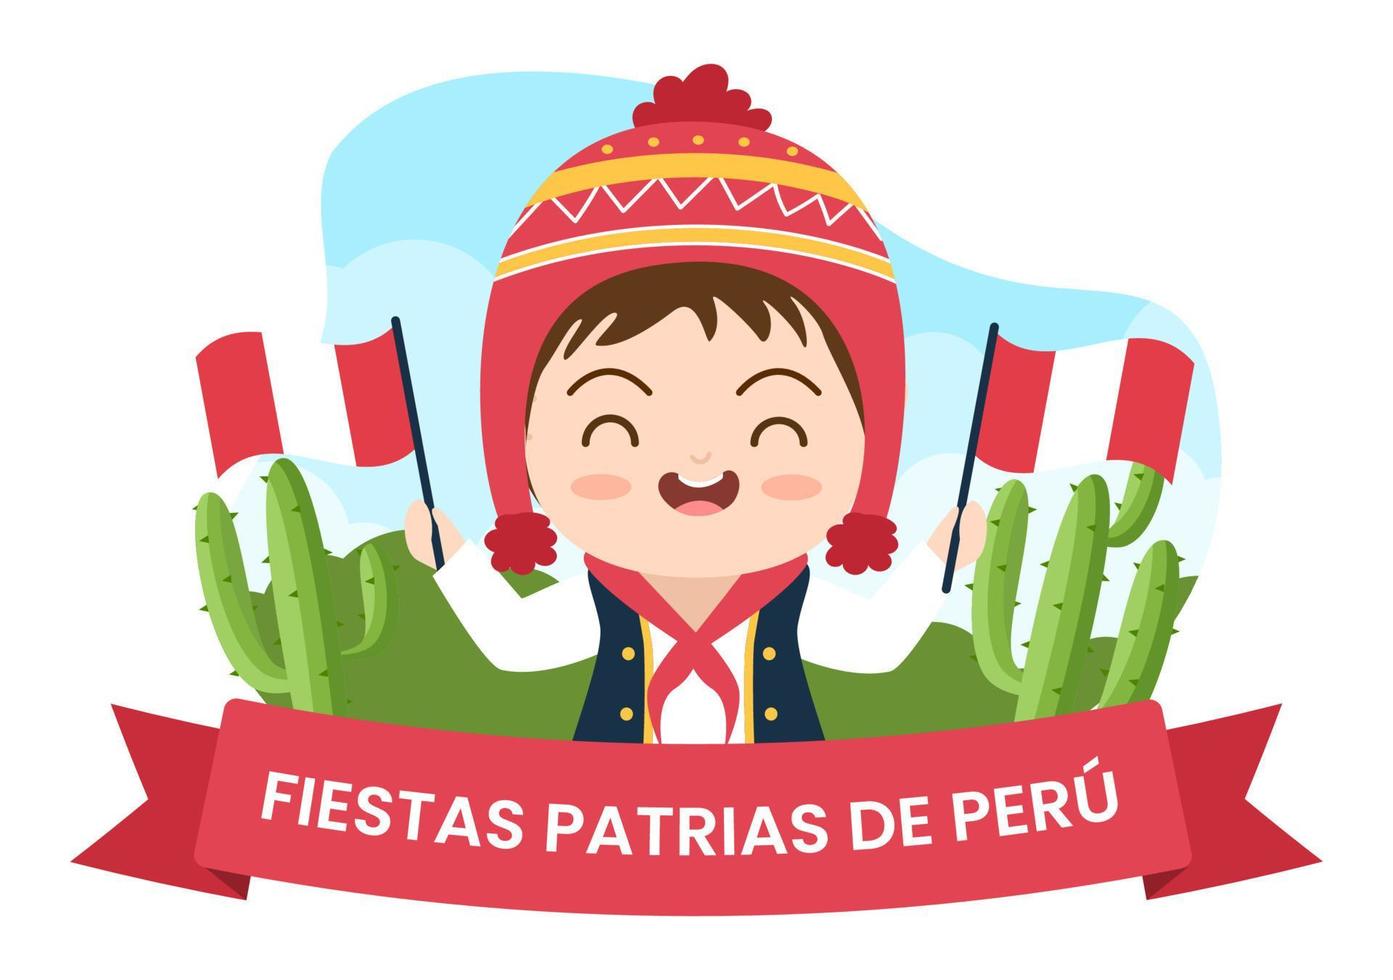 felices fiestas patrias of Peruaanse onafhankelijkheidsdag cartoon afbeelding met vlag en schattige mensen voor de viering van de nationale feestdag peru op 28 juli in vlakke stijl achtergrond vector